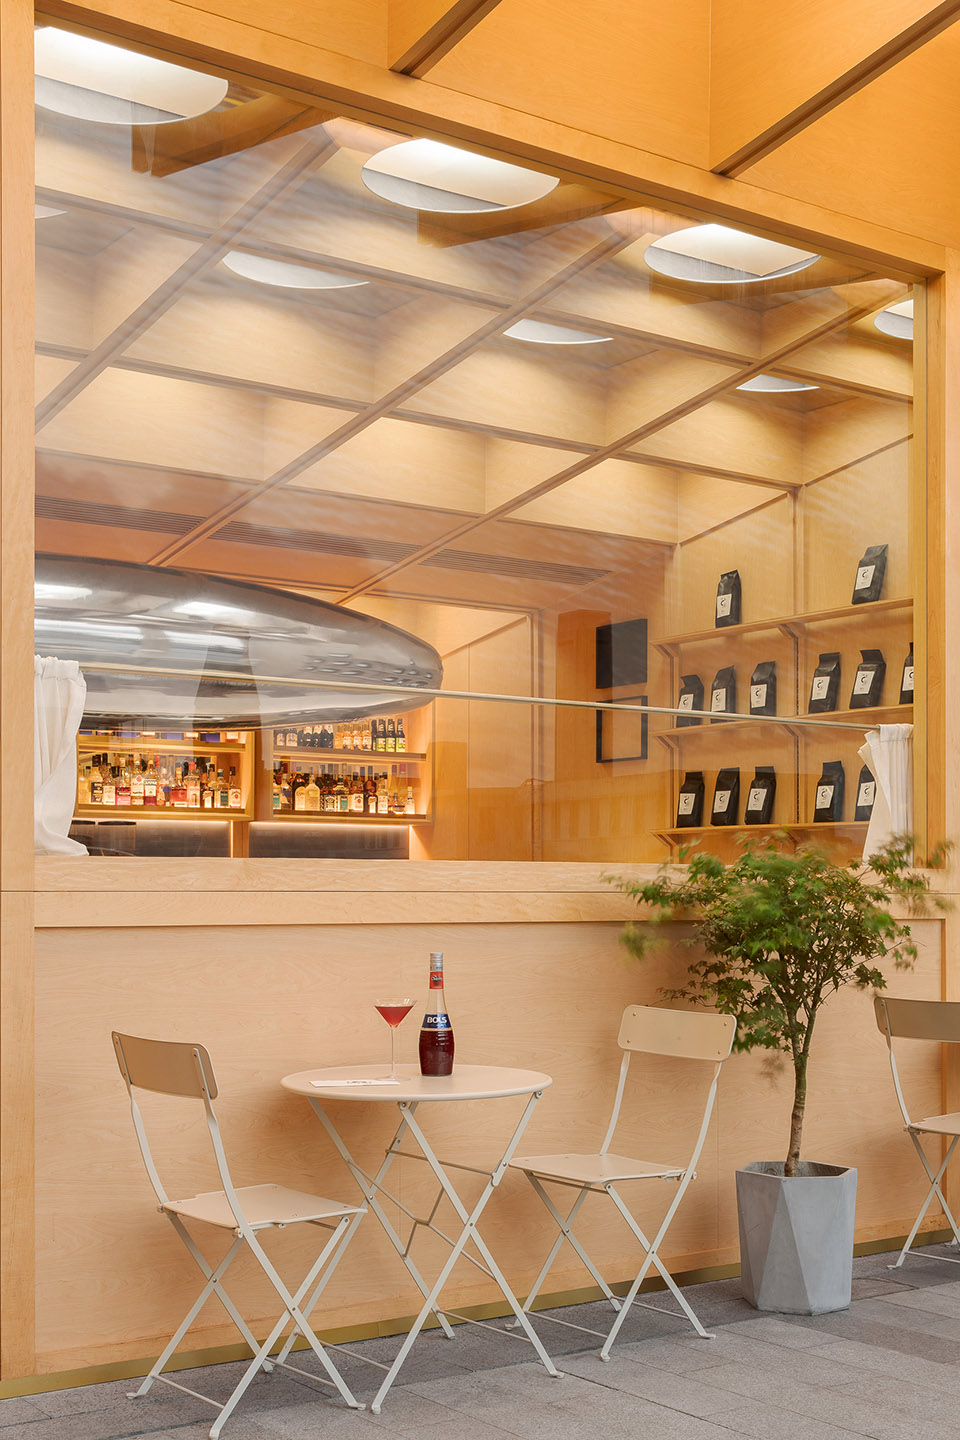 浮廊C2 Cafe &  Bar咖啡厅，深圳/专门为年轻人打造的“空中楼阁”-71